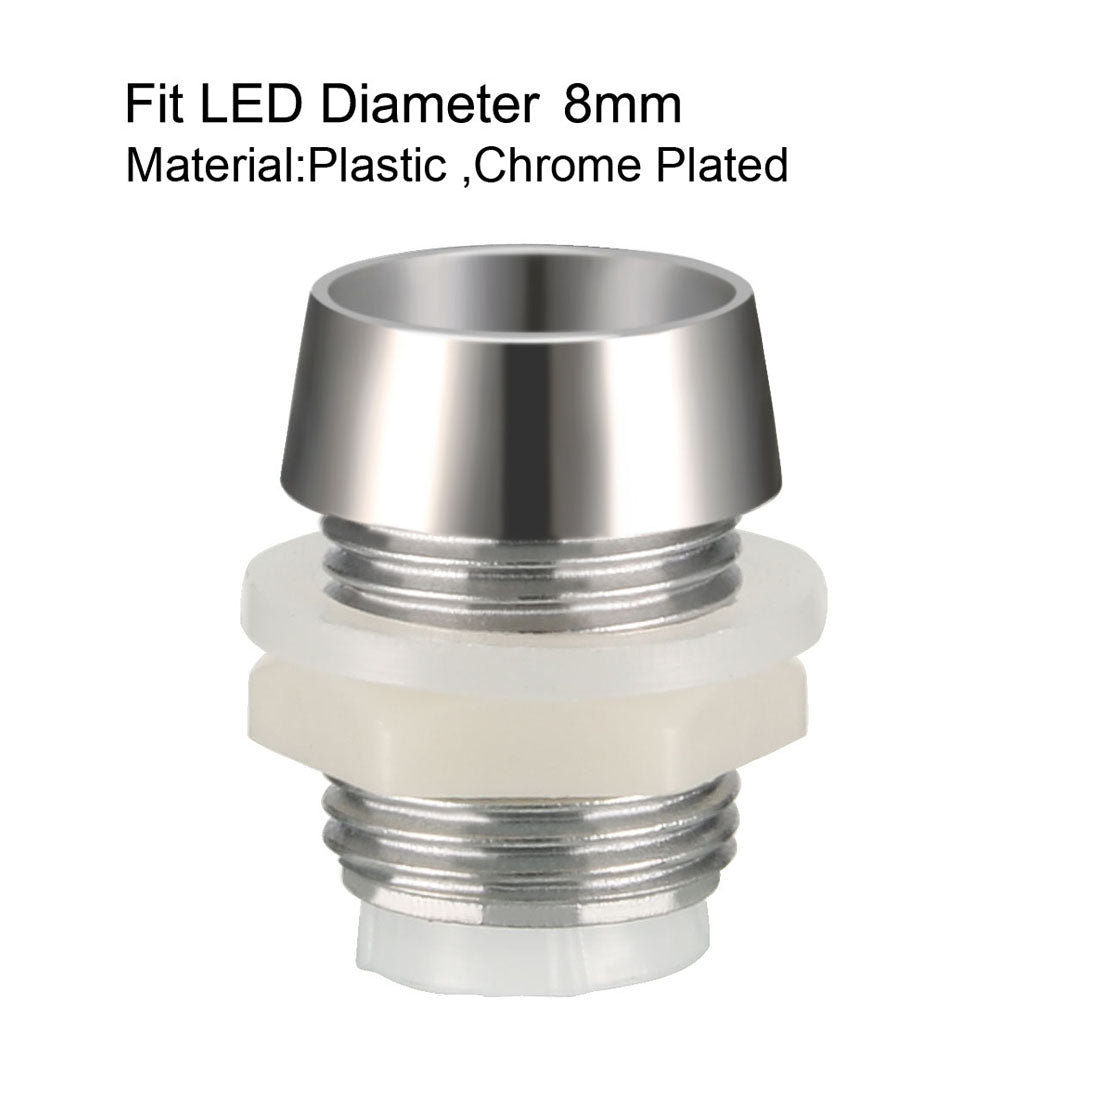 uxcell Uxcell 30pcs 8mm LED Lamp Holder Light Bulb Socket Plastic Chrome Plated for Light-emitting Diode Lighting